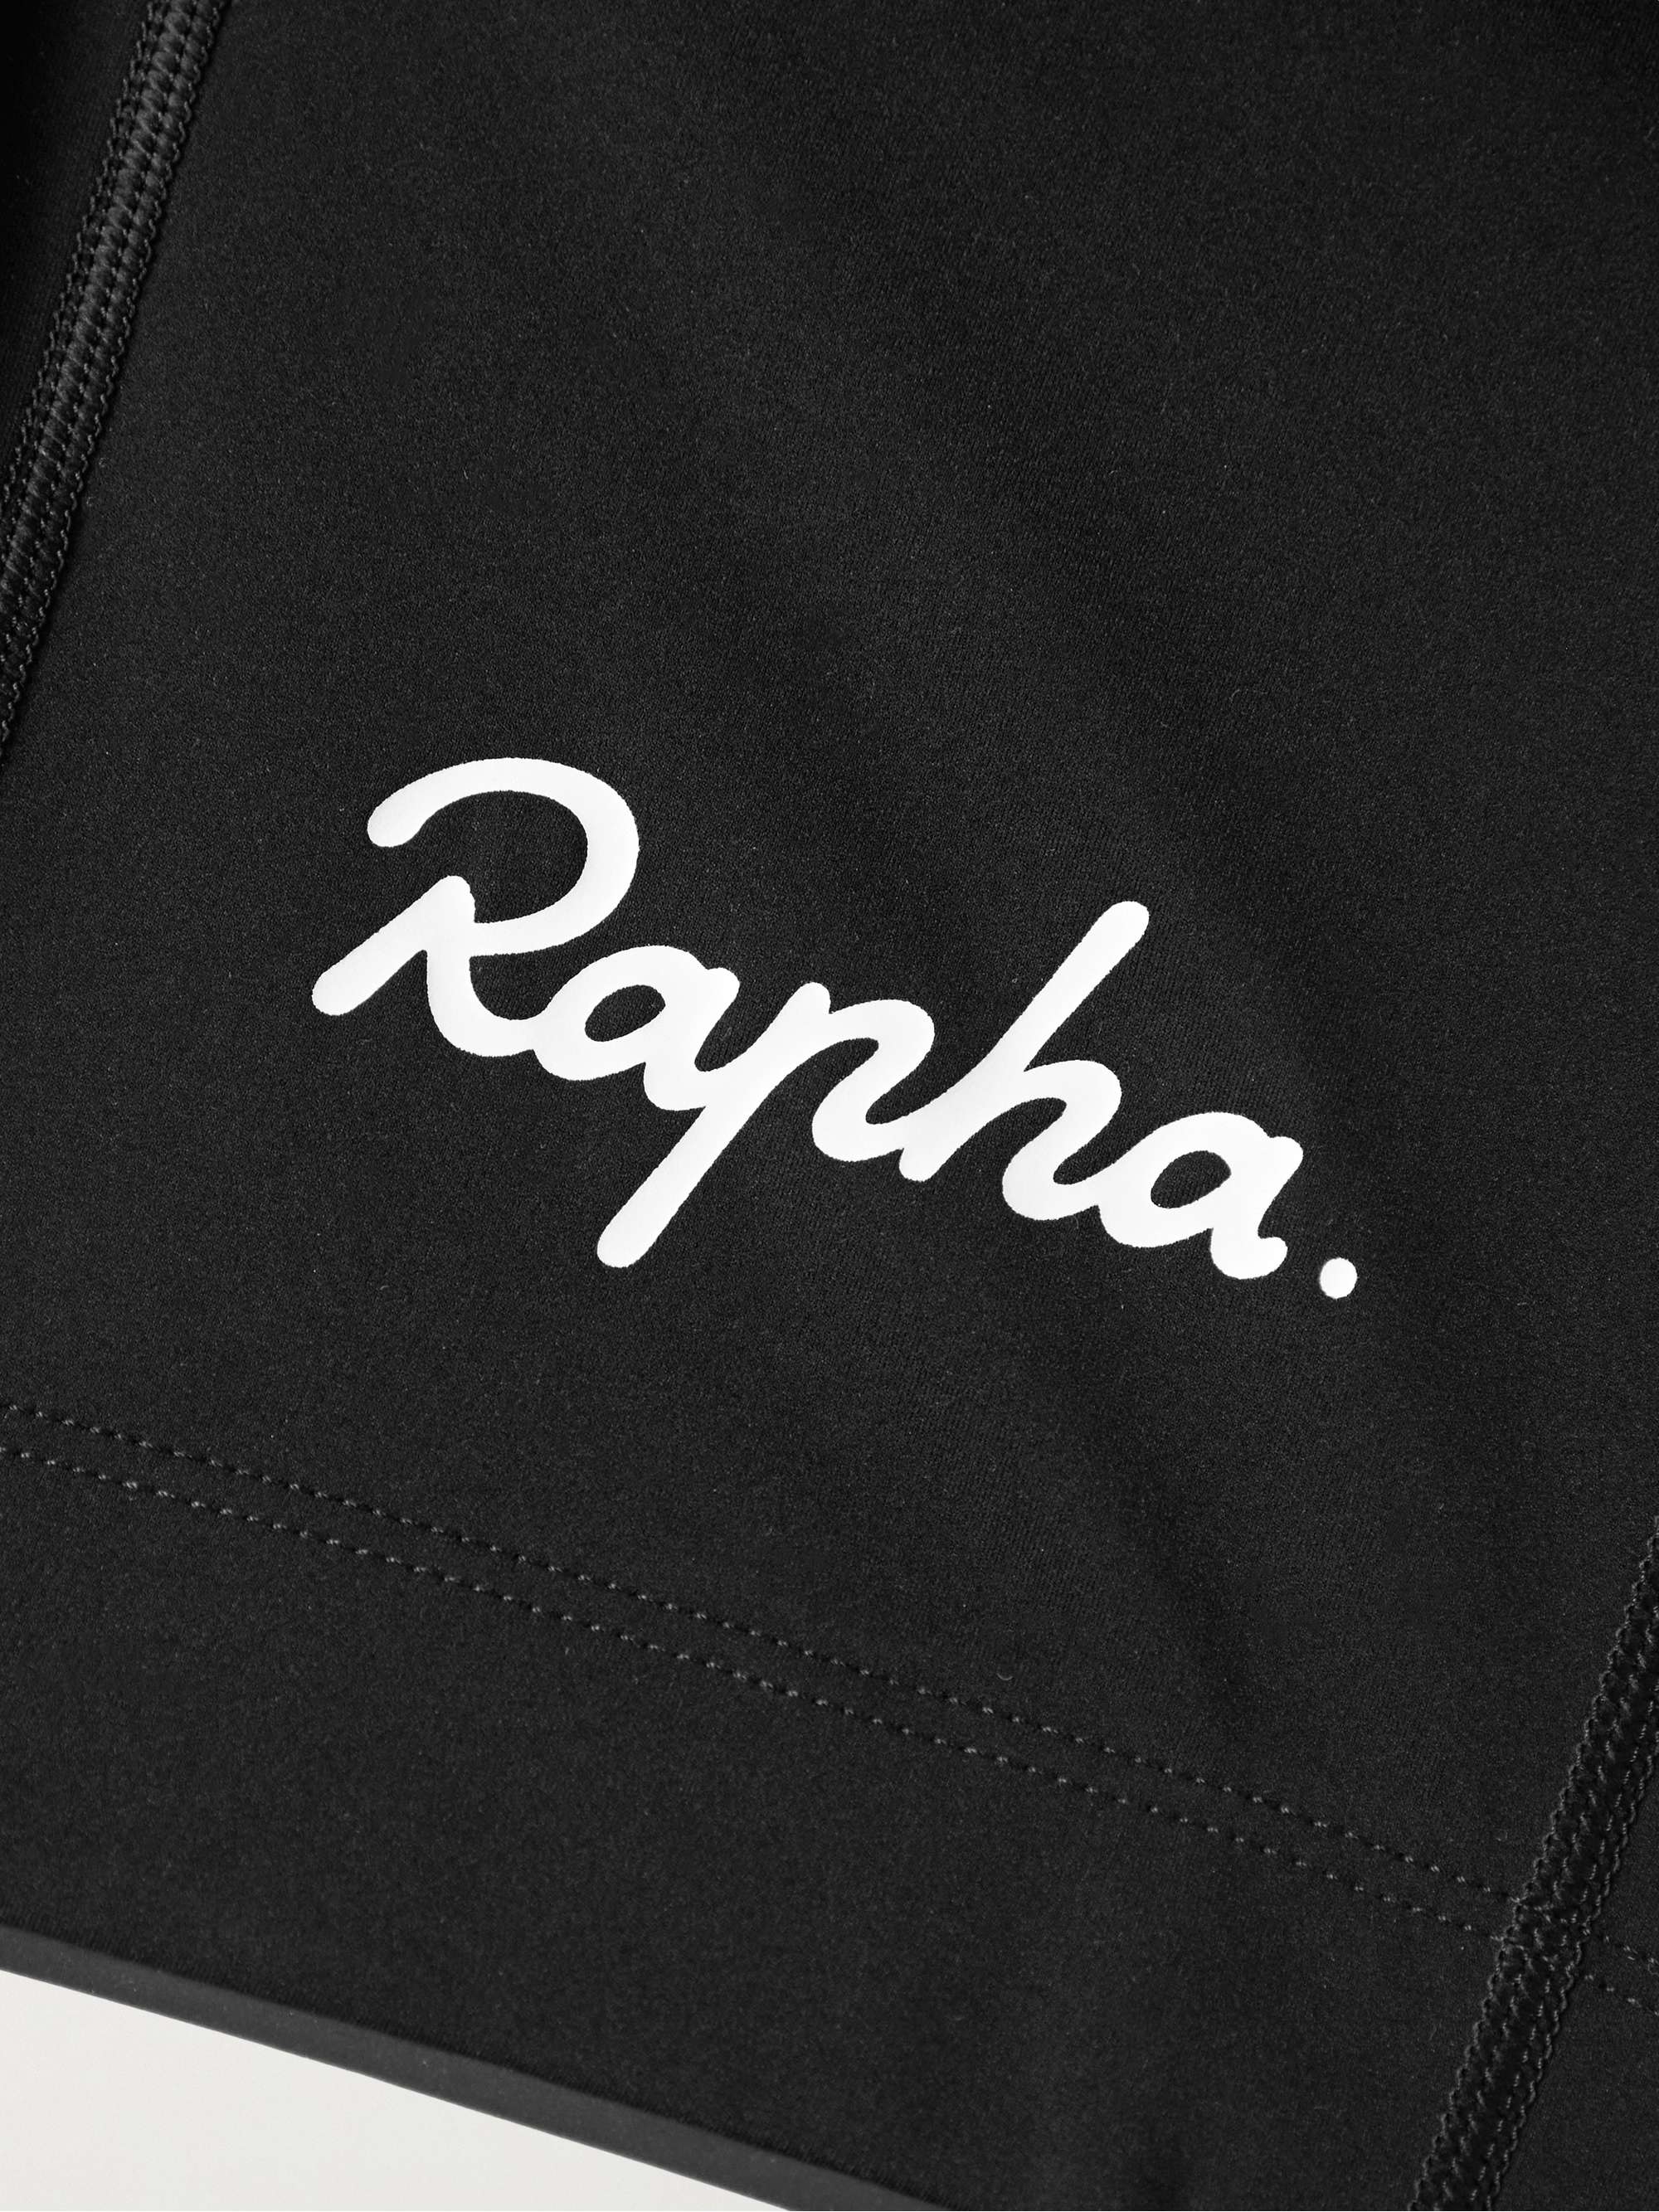 RAPHA 클래식 재활용 사이클링 빕 쇼츠